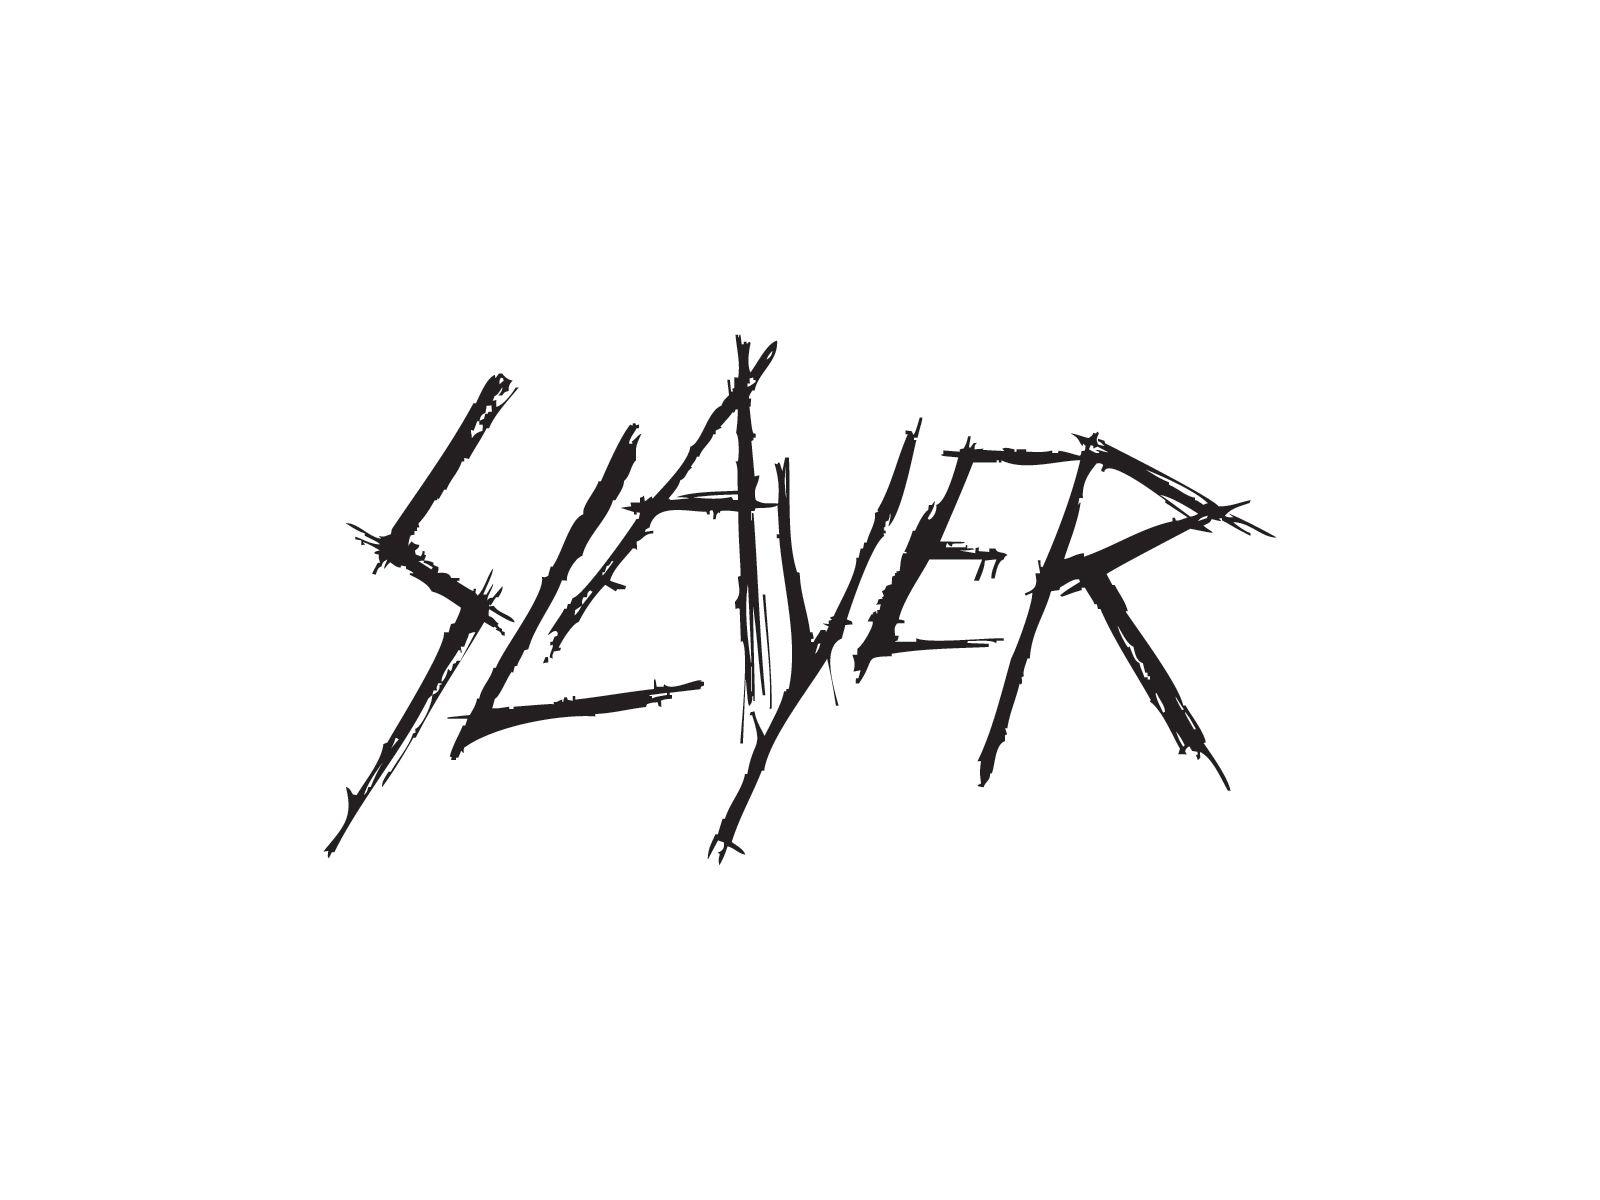 Slayer logo. Band logos band logos, metal bands logos, punk